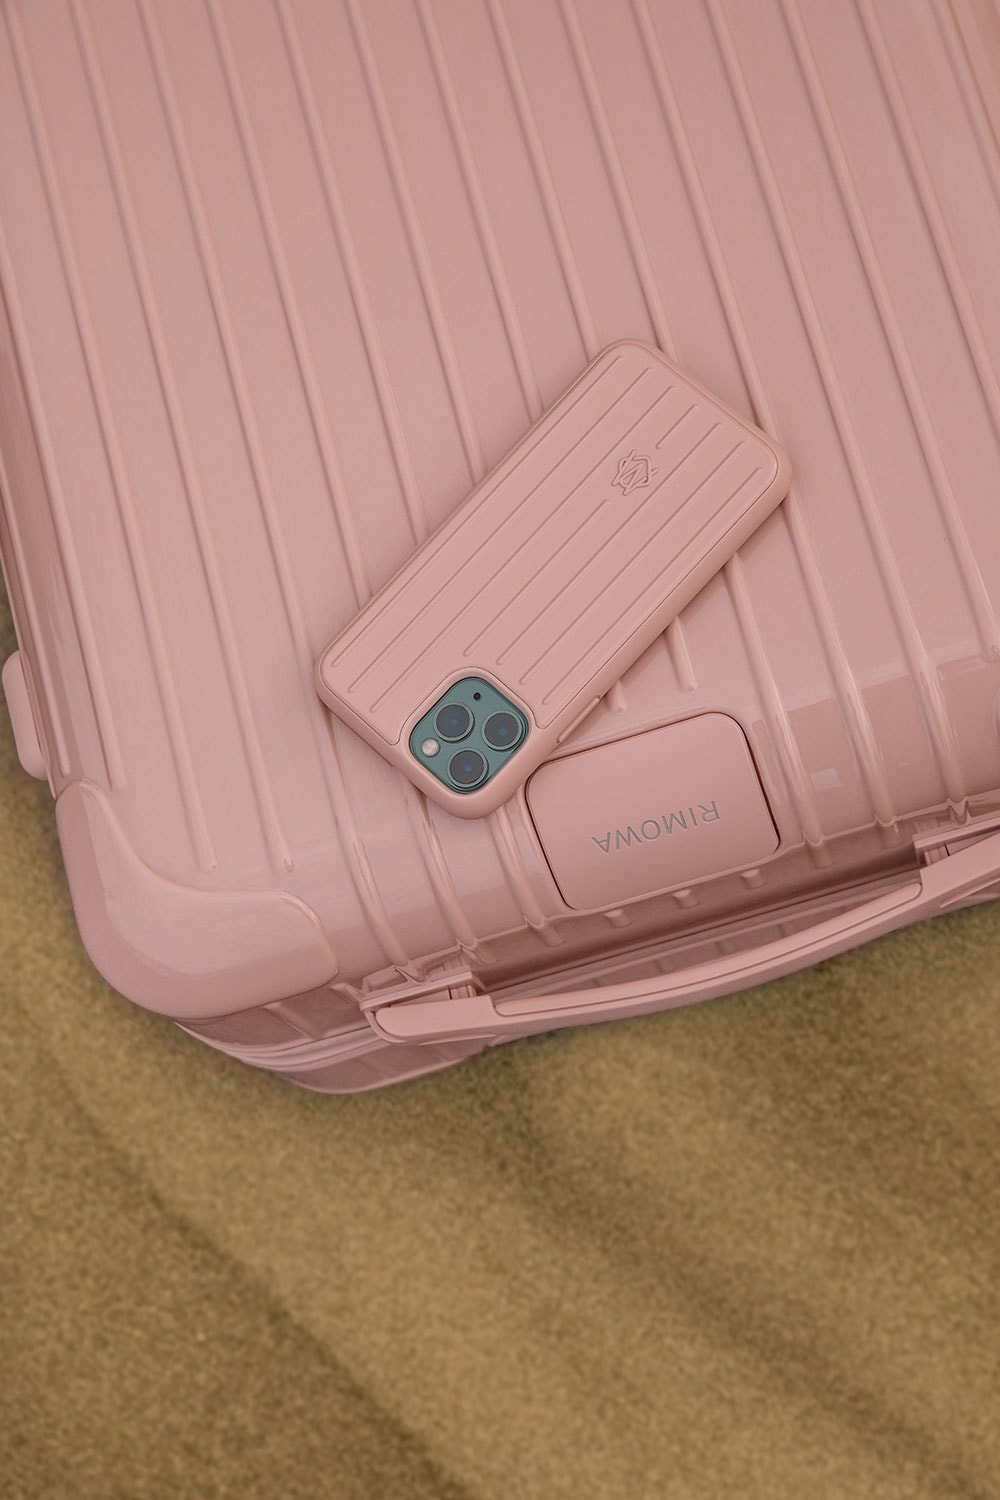 リモワの定番エッセンシャルに砂漠からインスパイアされた新色が追加 RIMOWA Essential Desert Rose Cactus suitcase cabin check in trunk polycarbonate Mojave Desert inspiration